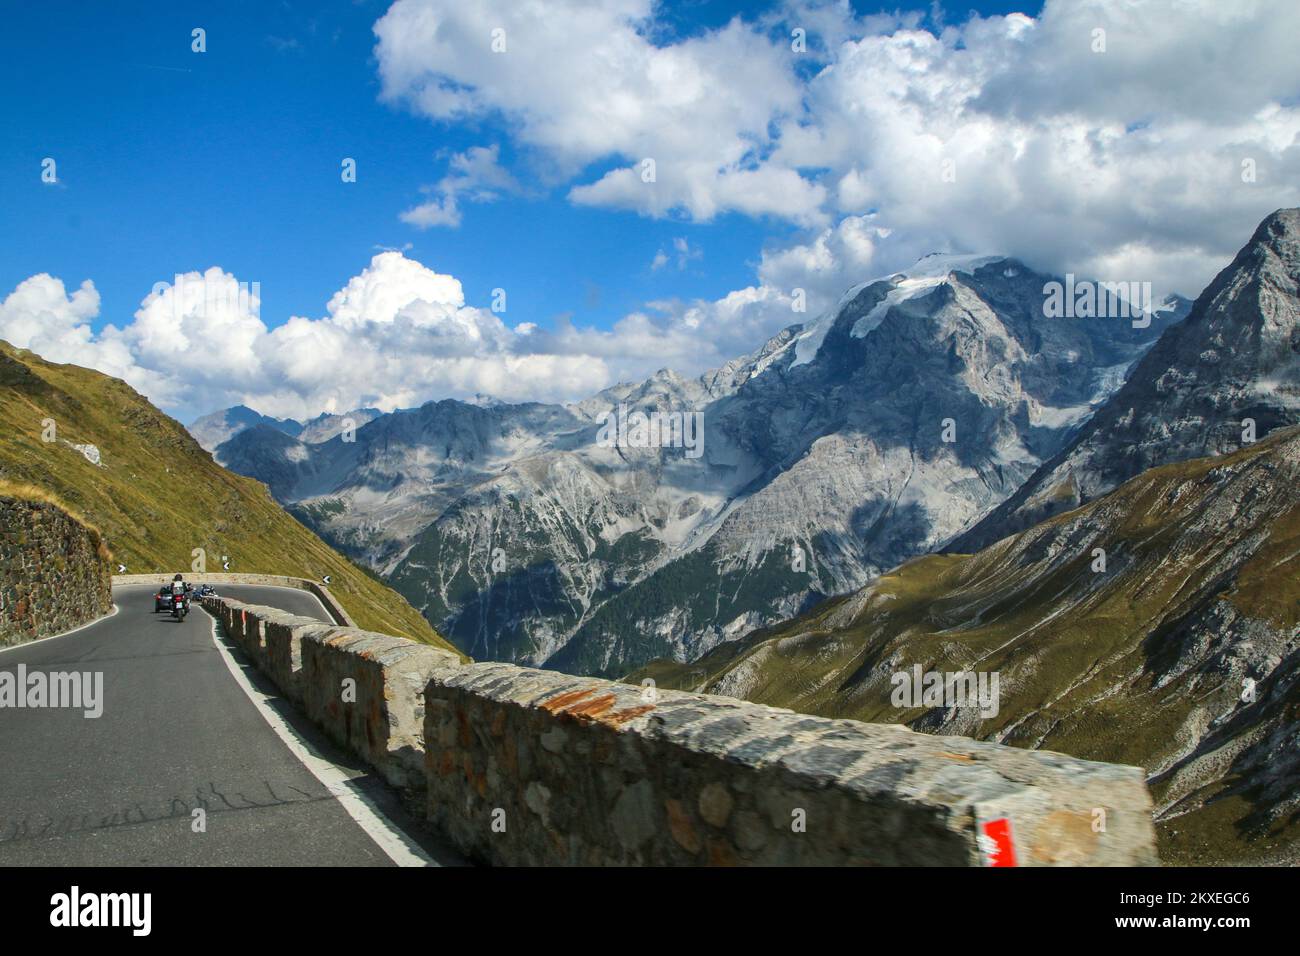 Le trajet à travers les épingles des routes difficiles en bas du célèbre col du Stelvio dans les Alpes italiennes, près de la Suisse. Banque D'Images